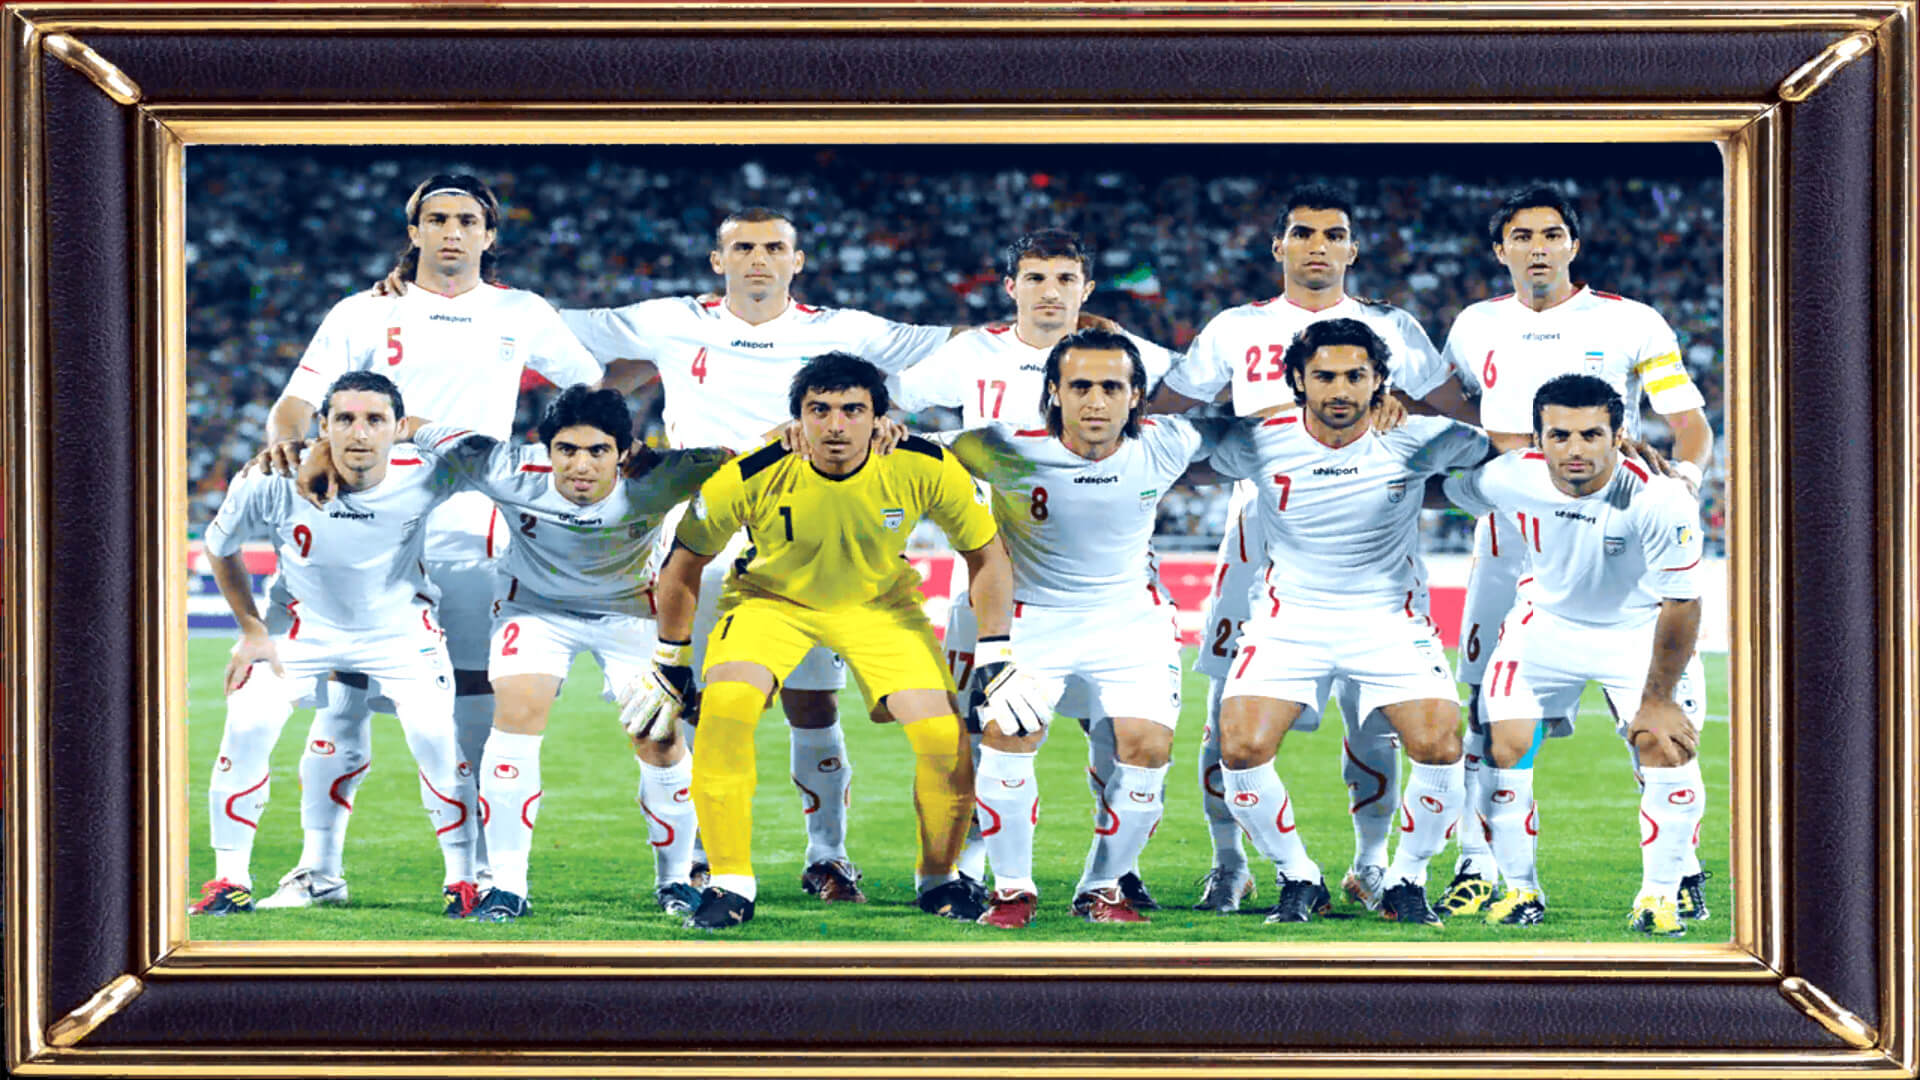 بازی فوتبال لیگ برتر ایران 90-91